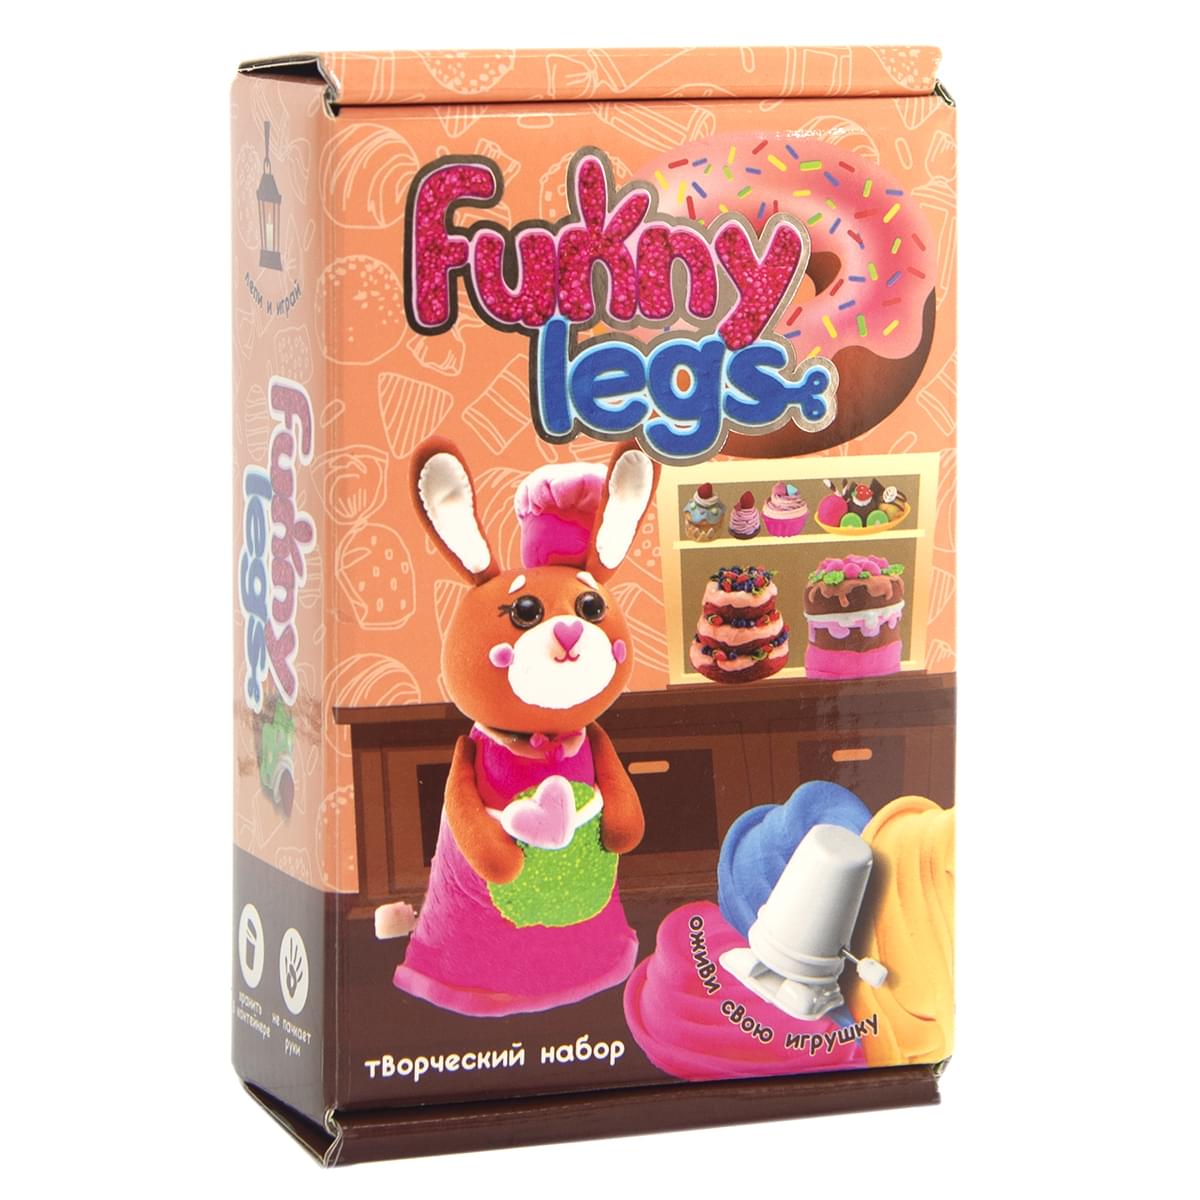 Art kit for girls "Funny legs" (Russian) (30711)